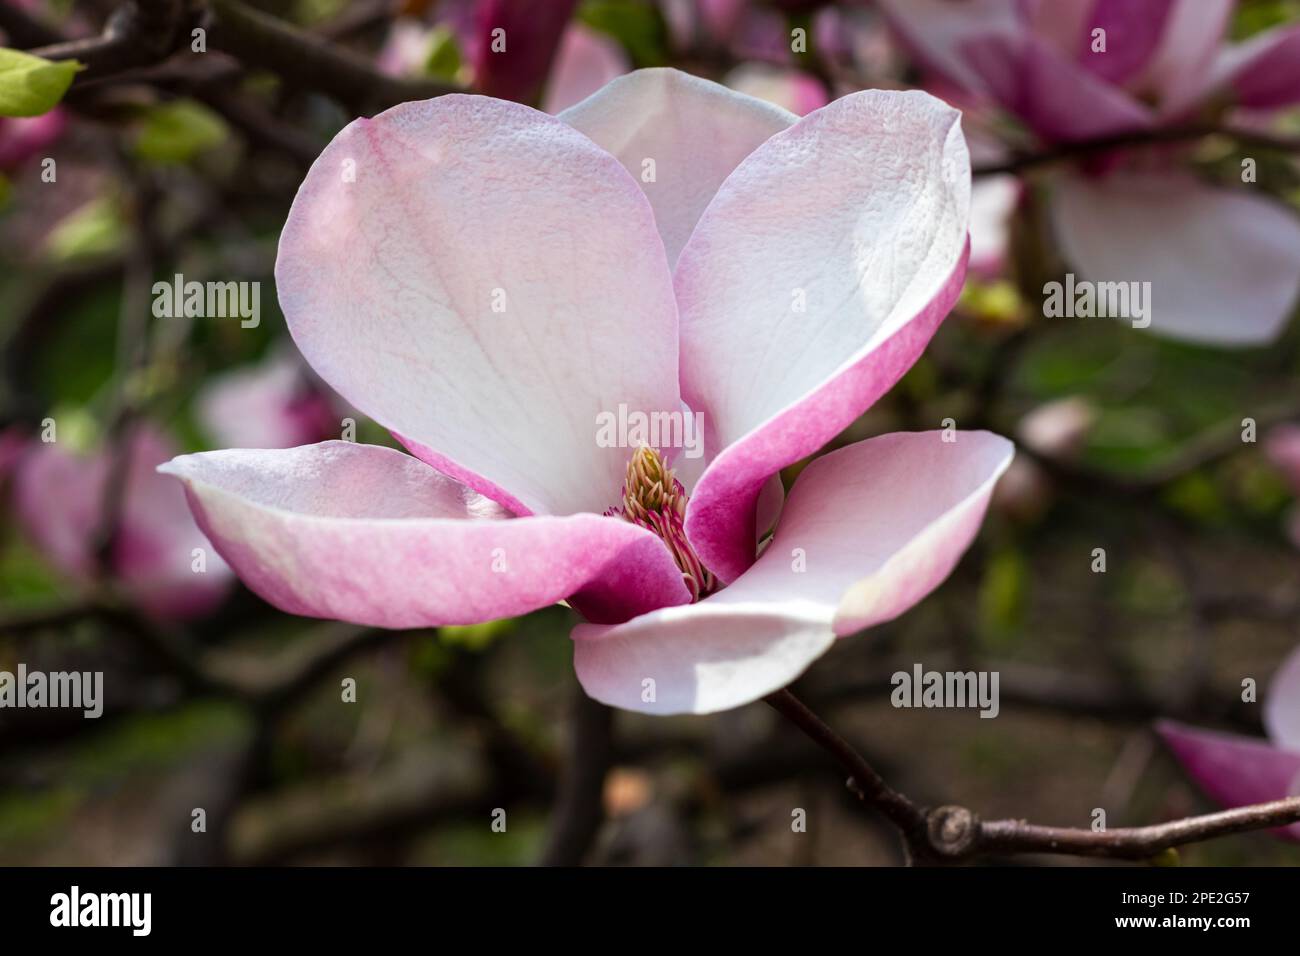 Magnifique fleur rose magnolia le jour du printemps. Arbre fleuri dans le jardin Banque D'Images